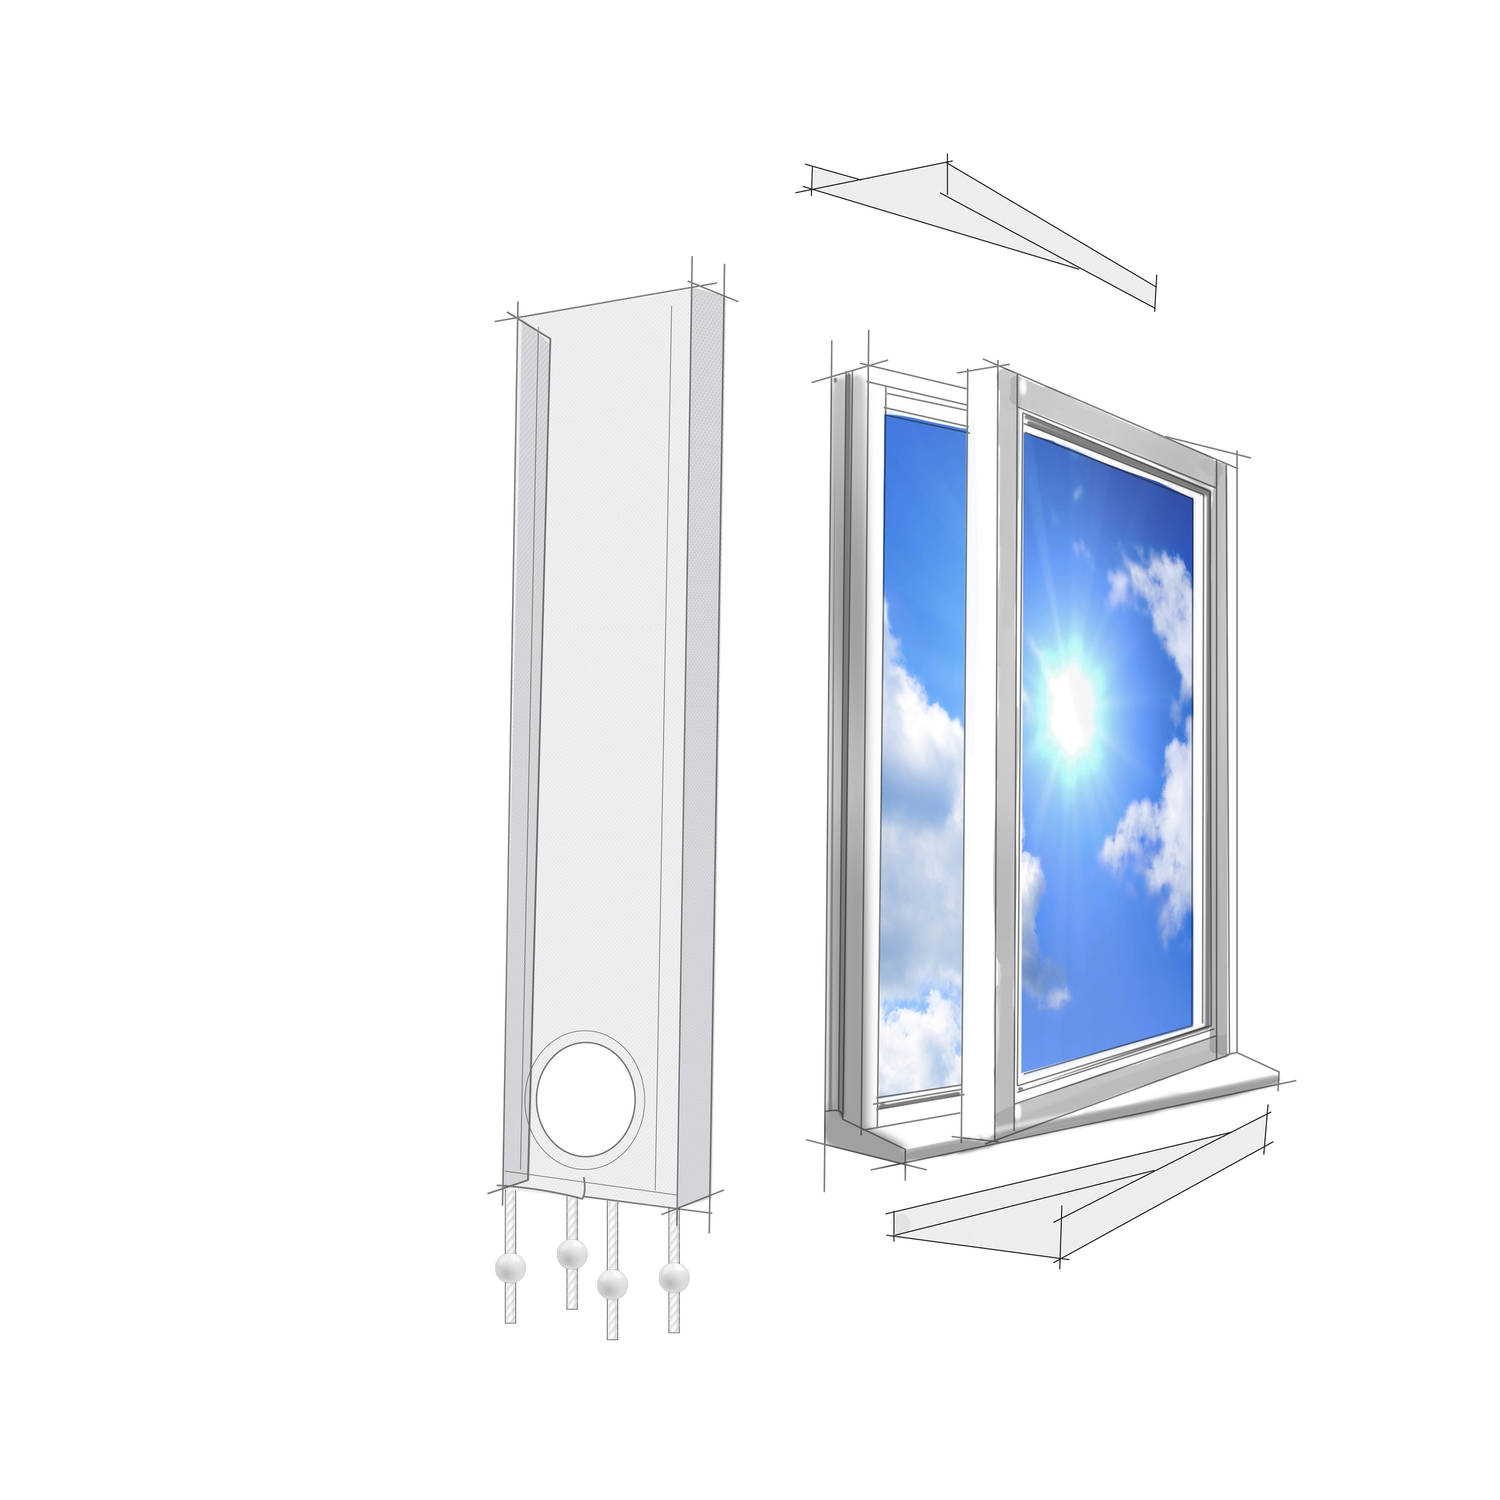 alpina airco raamafdichtingsset universeel voor raam en deur 220 x 30 cm blokker